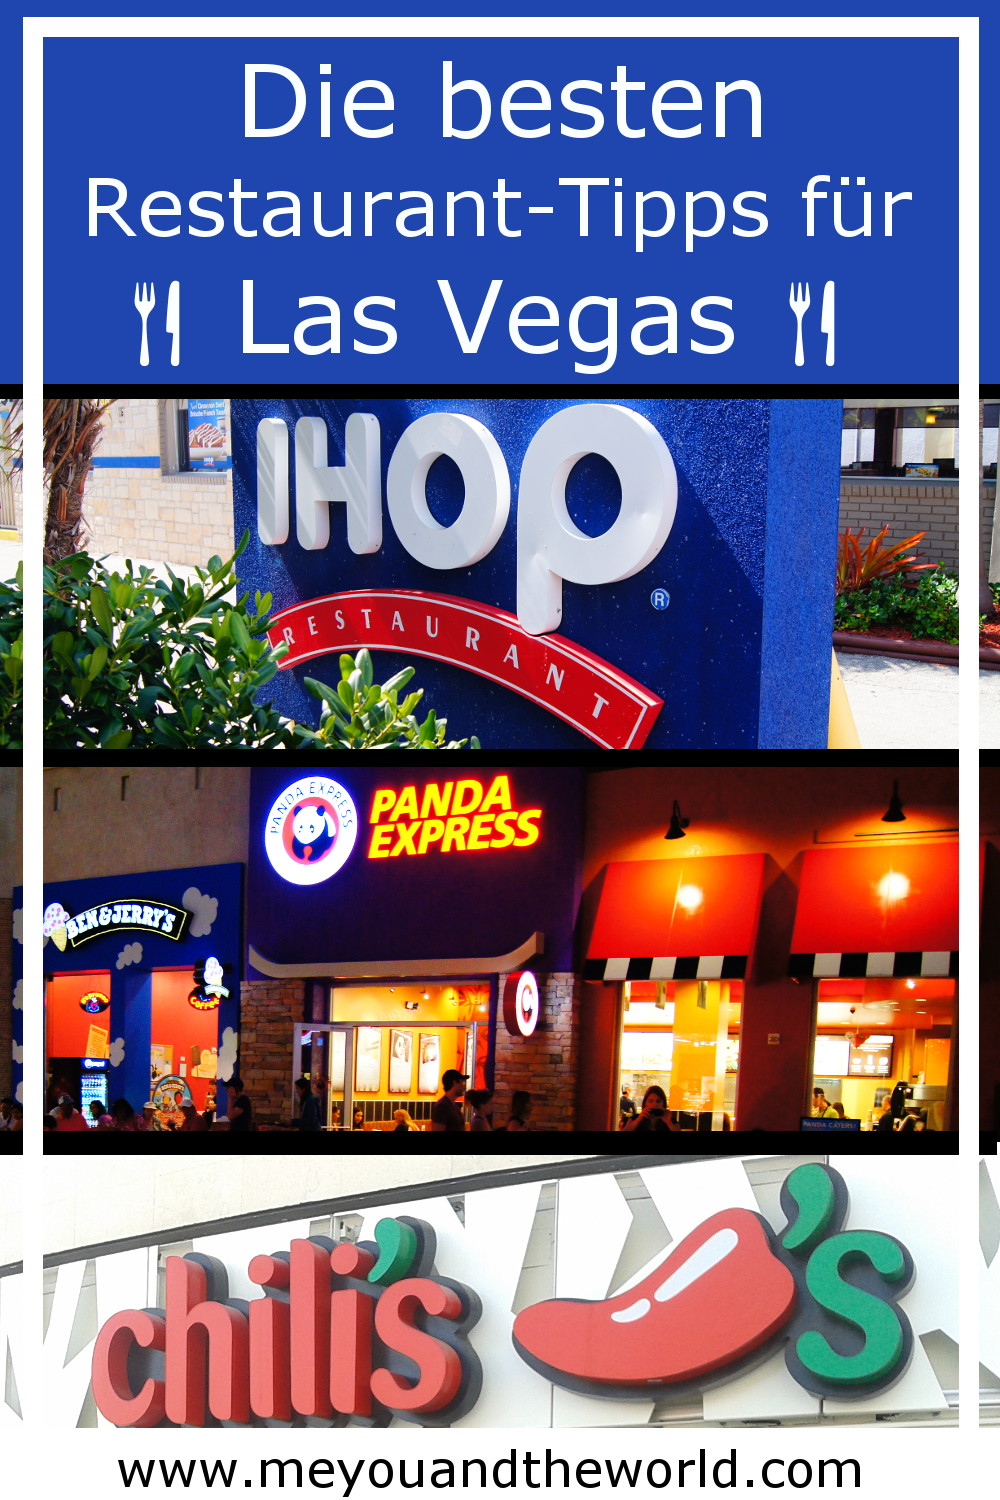 Restaurant Tipps für Las Vegas